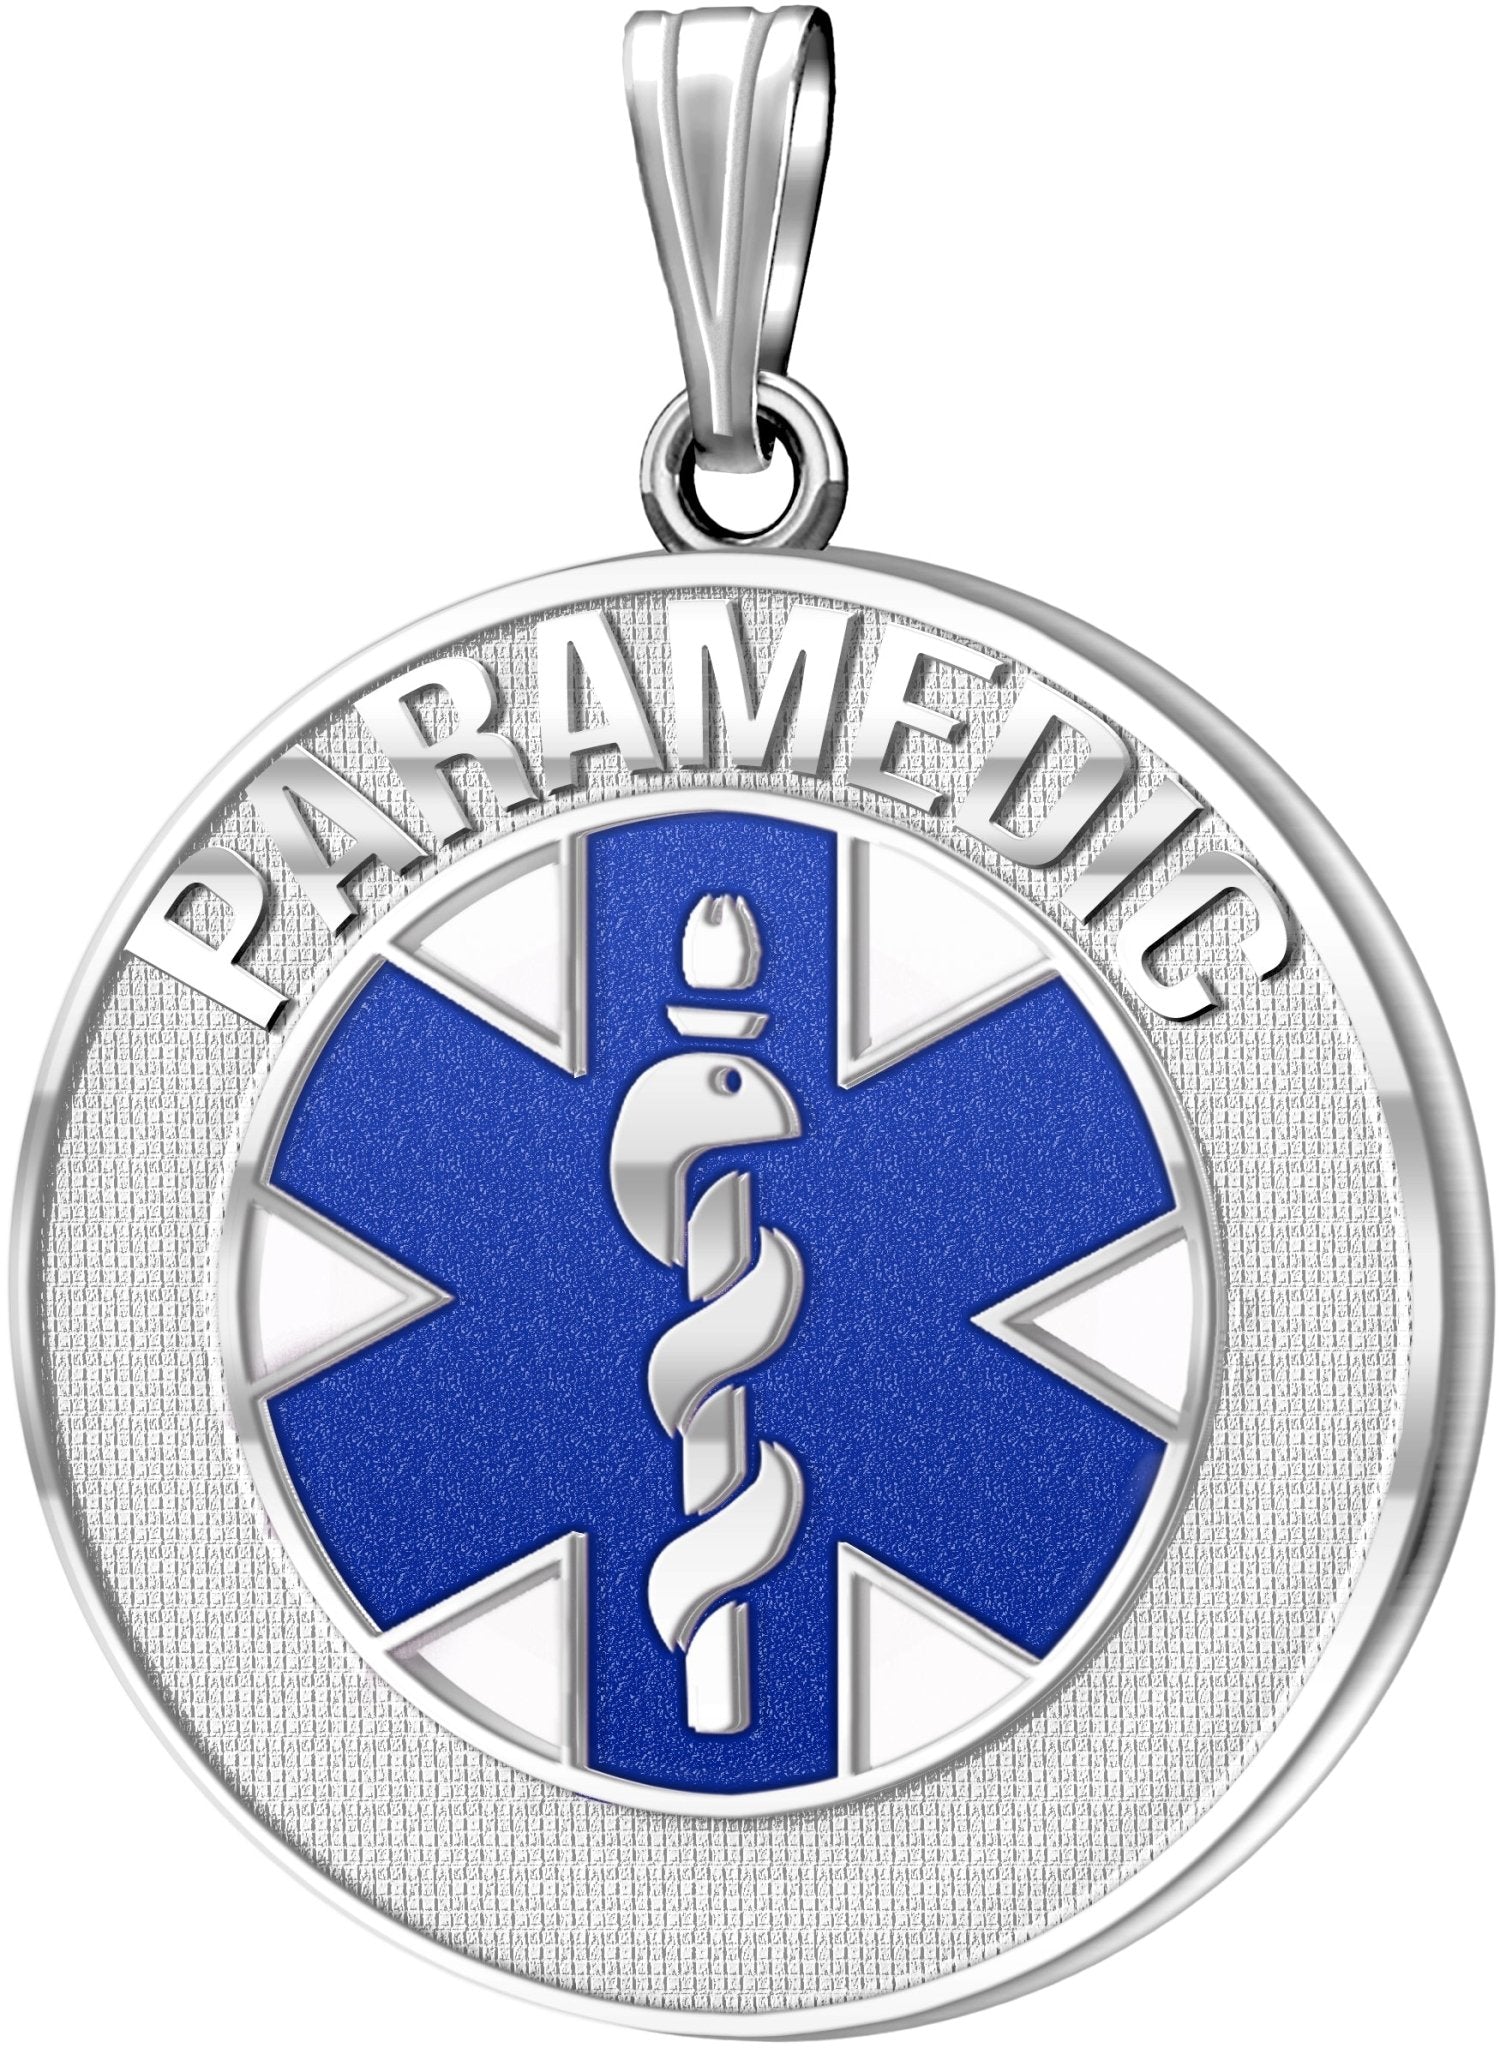 26mm 925 Sterling Silver Paramedic / EMT Medical Alert Medal Pendant Necklace, 3 Color Options - US Jewels